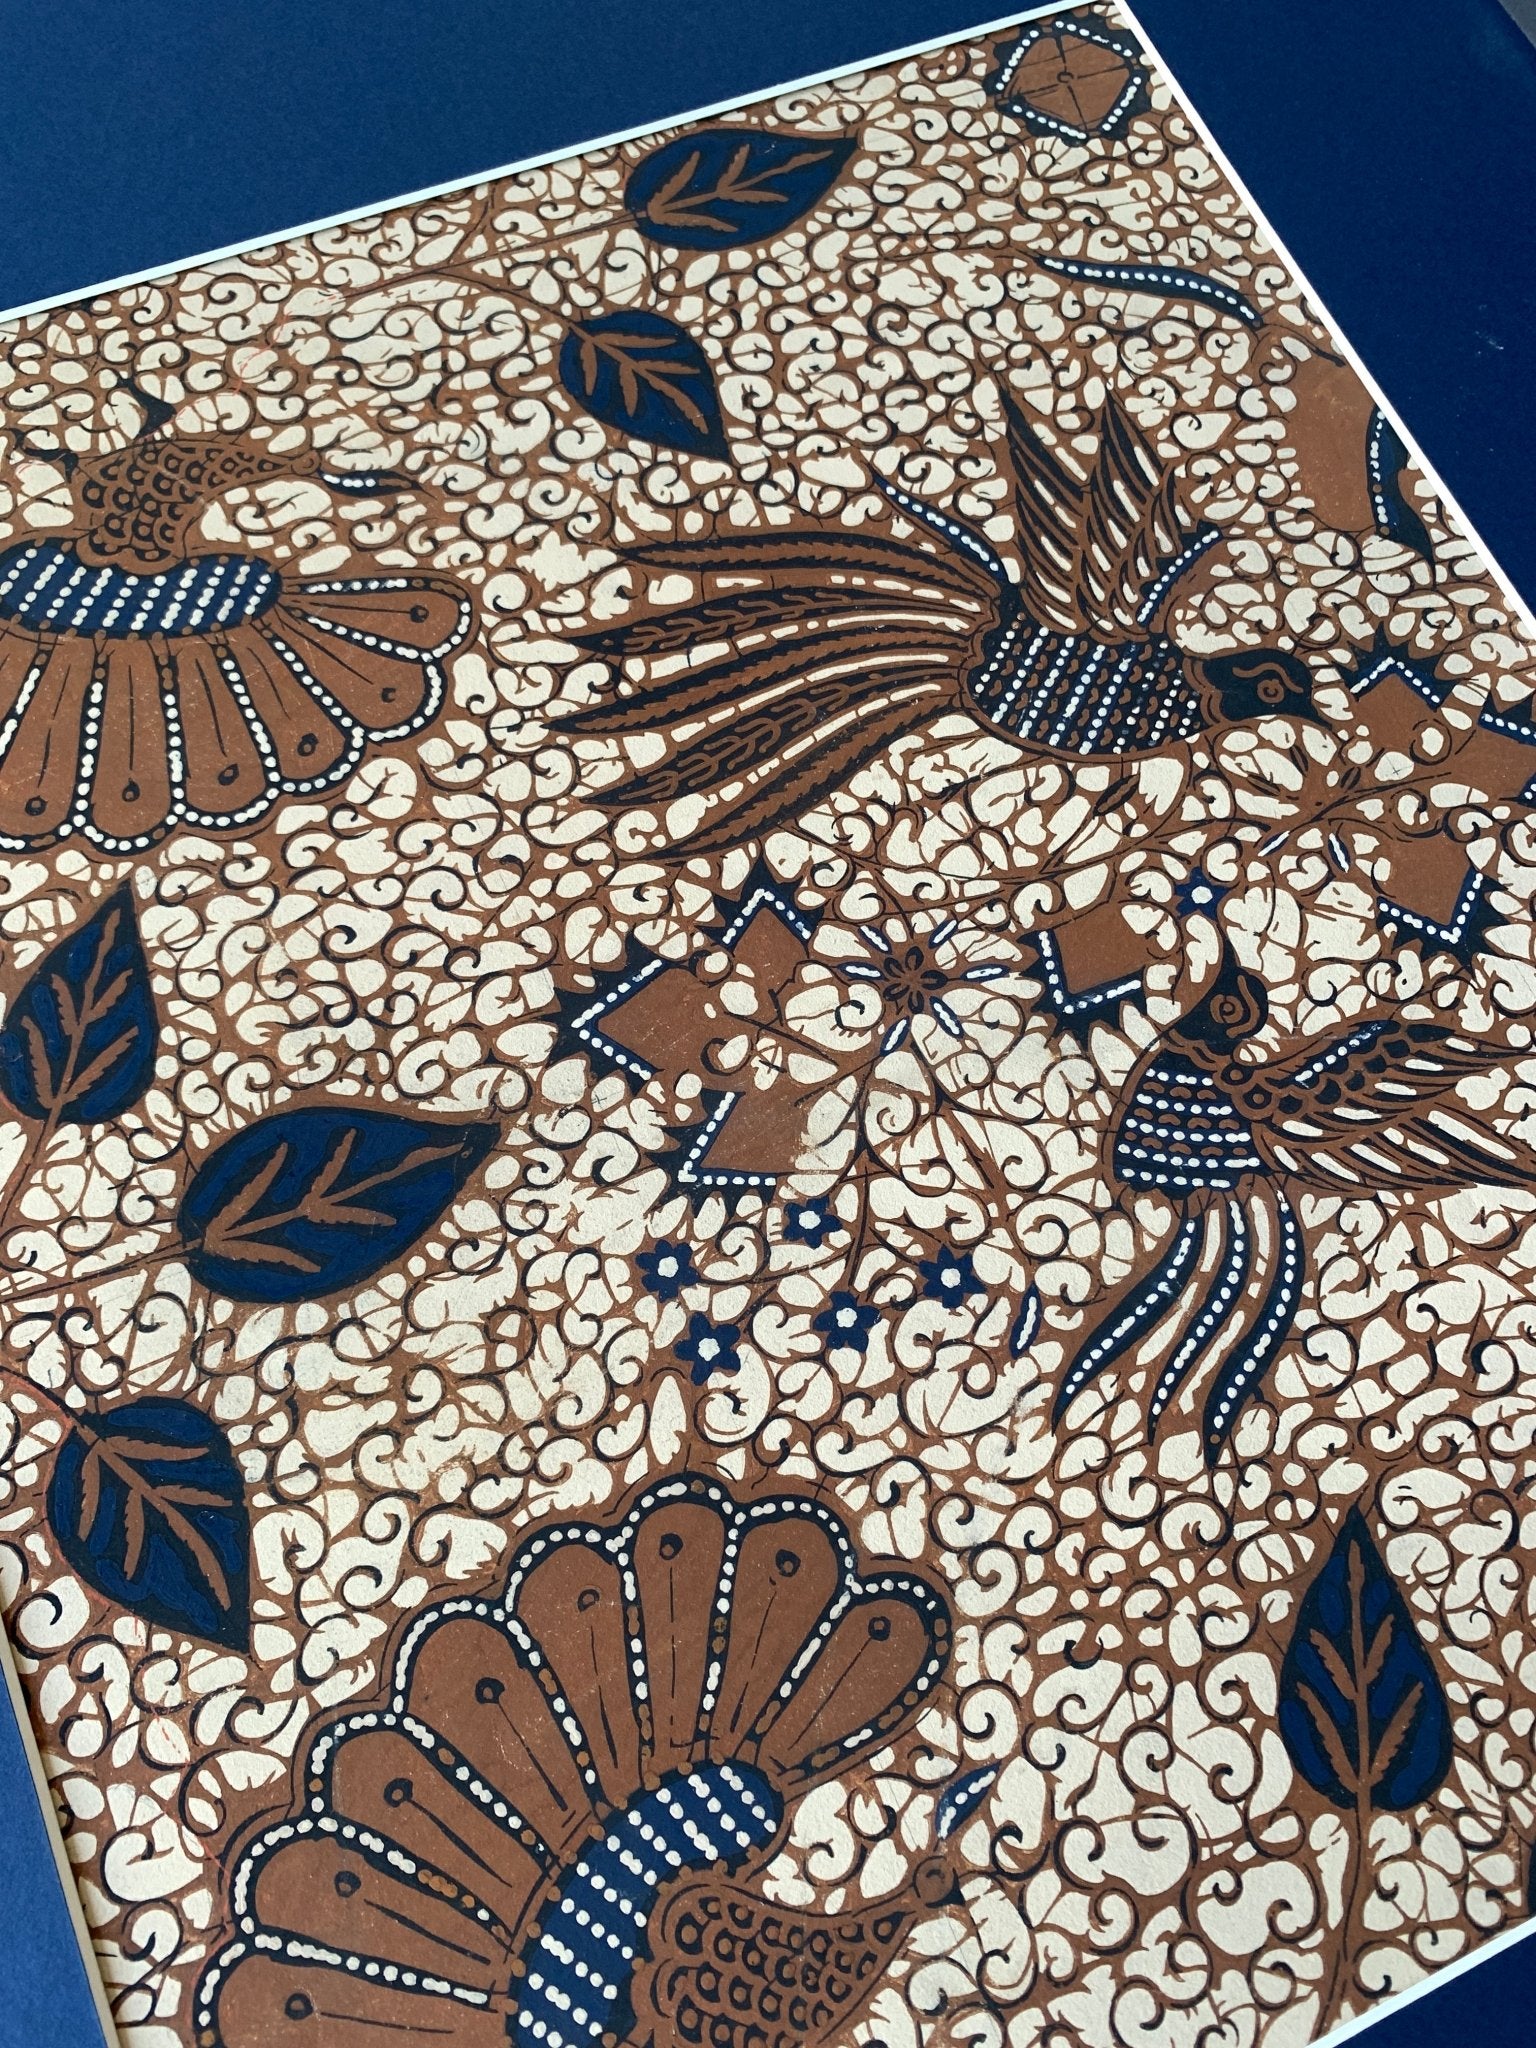 Javanese inspired textile design - Natalia Willmott